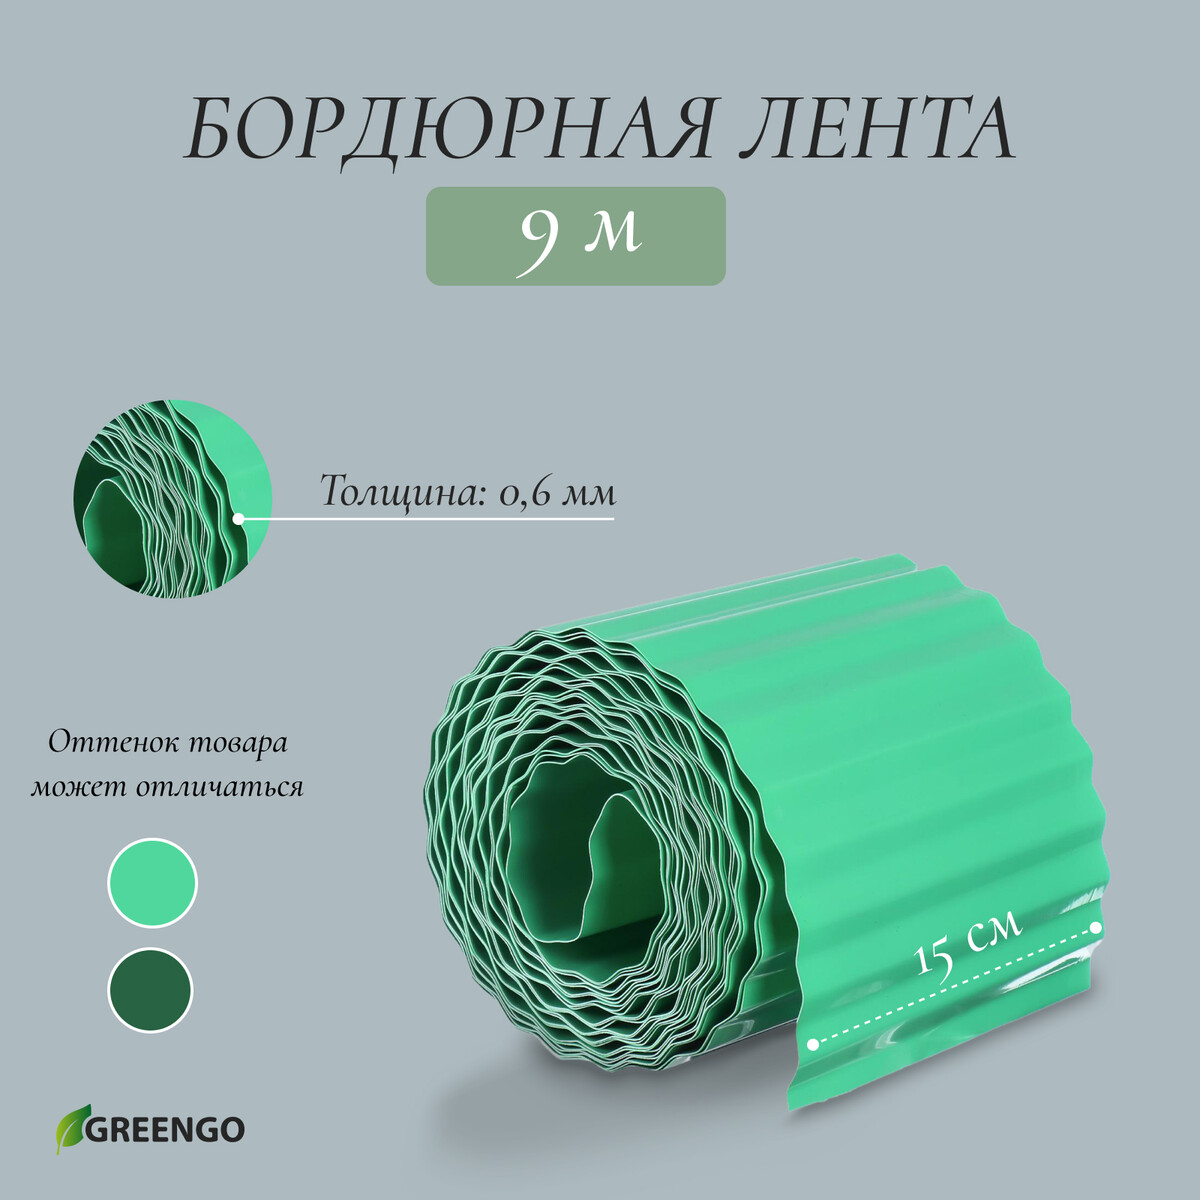 Лента бордюрная, 0.15 × 9 м, толщина 0.6 мм, пластиковая, гофра, зеленая, greengo лента бордюрная 0 15 × 9 м толщина 1 2 мм пластиковая фигурная зеленая